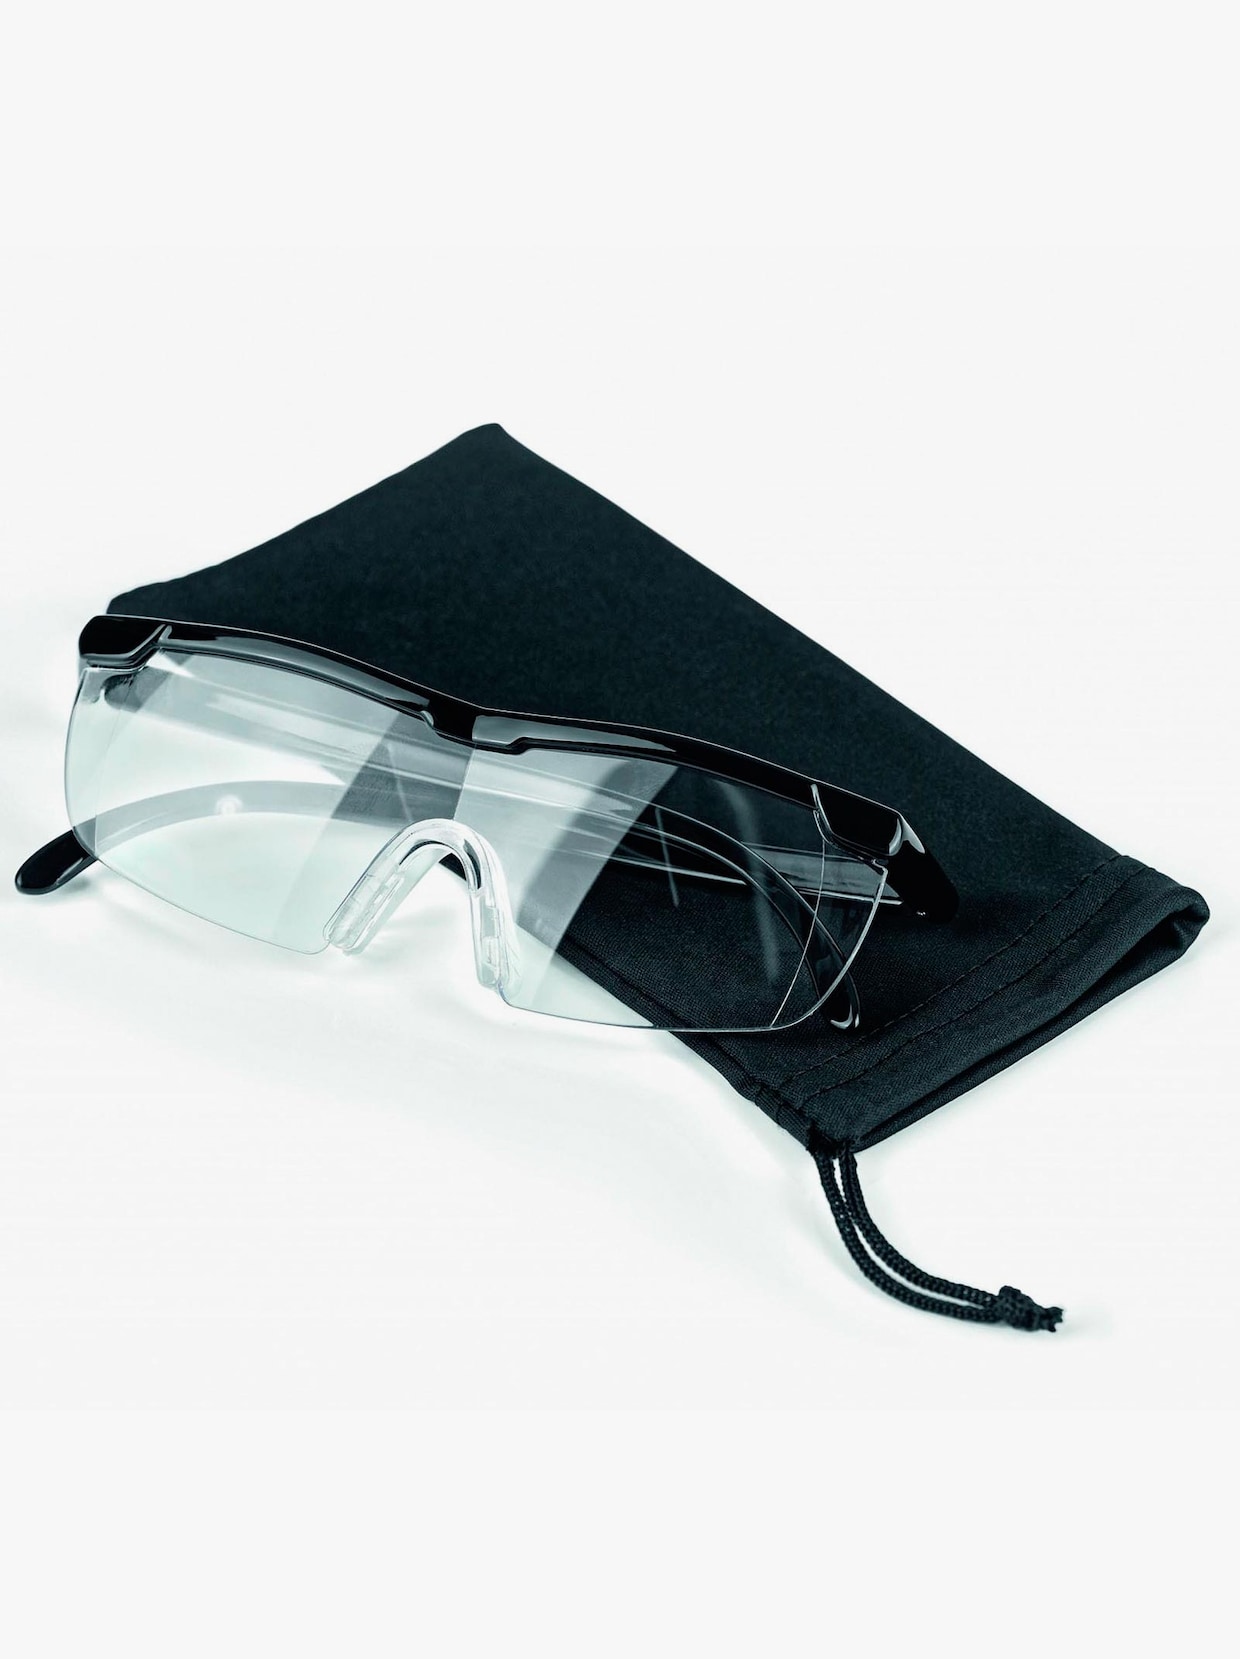 Vergrösserungsbrille - schwarz